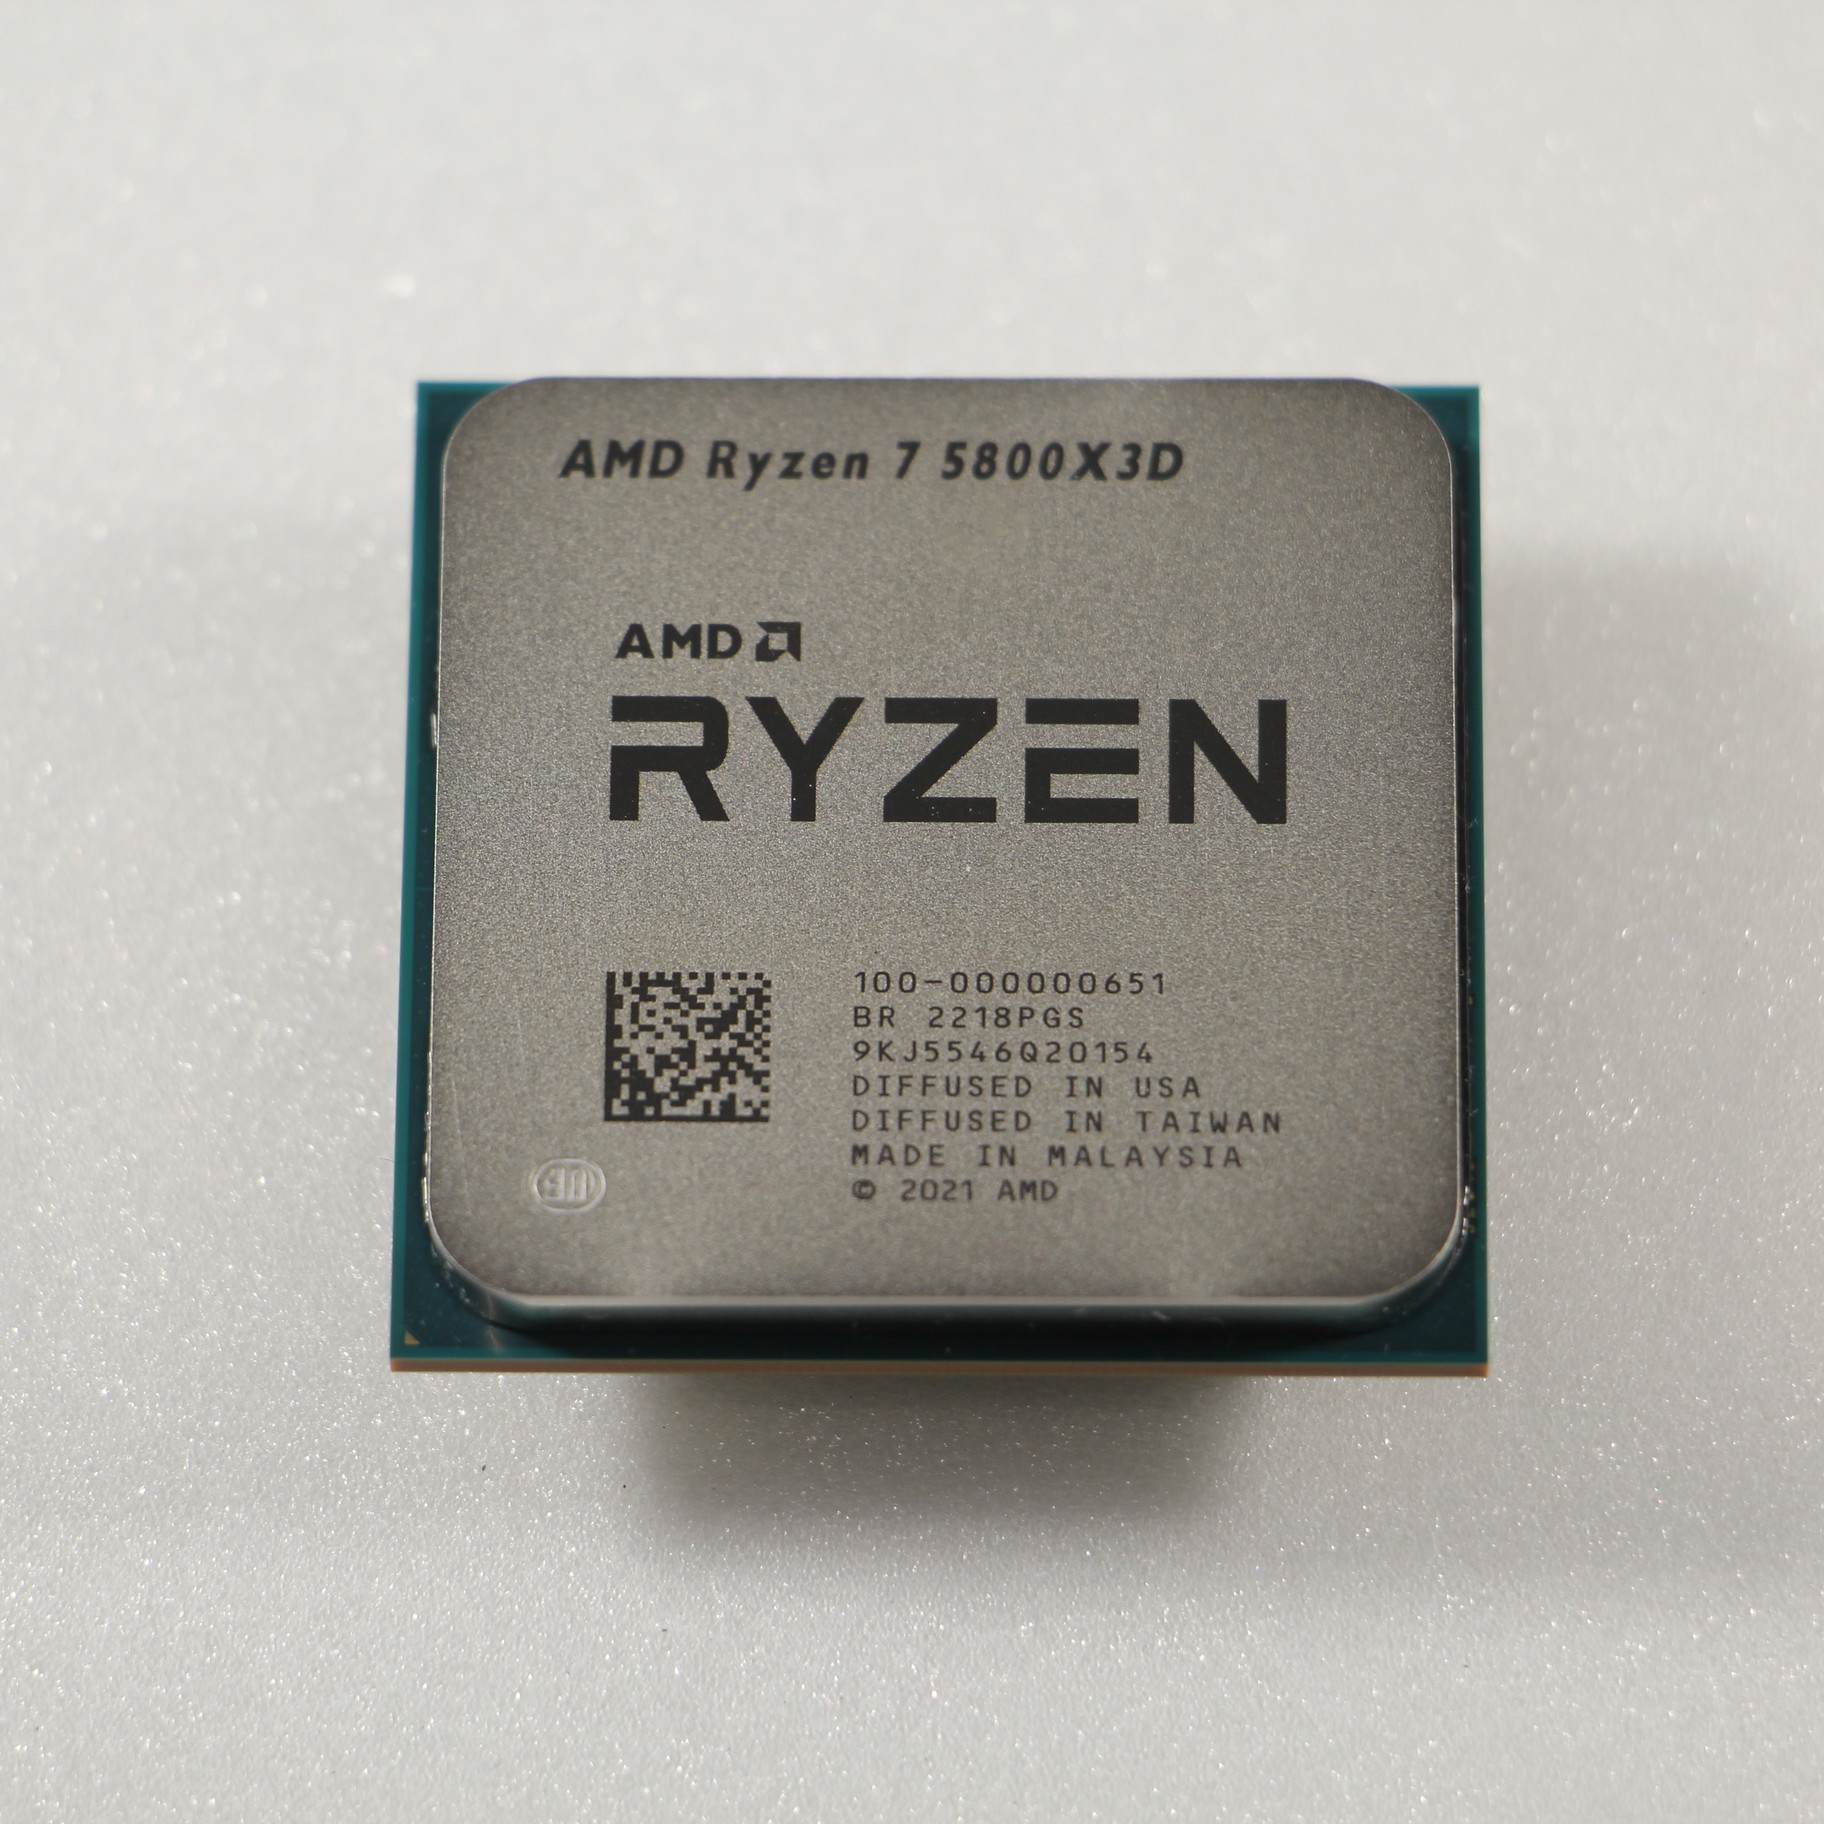 AMD RYZEN7 5800x3d socket am4